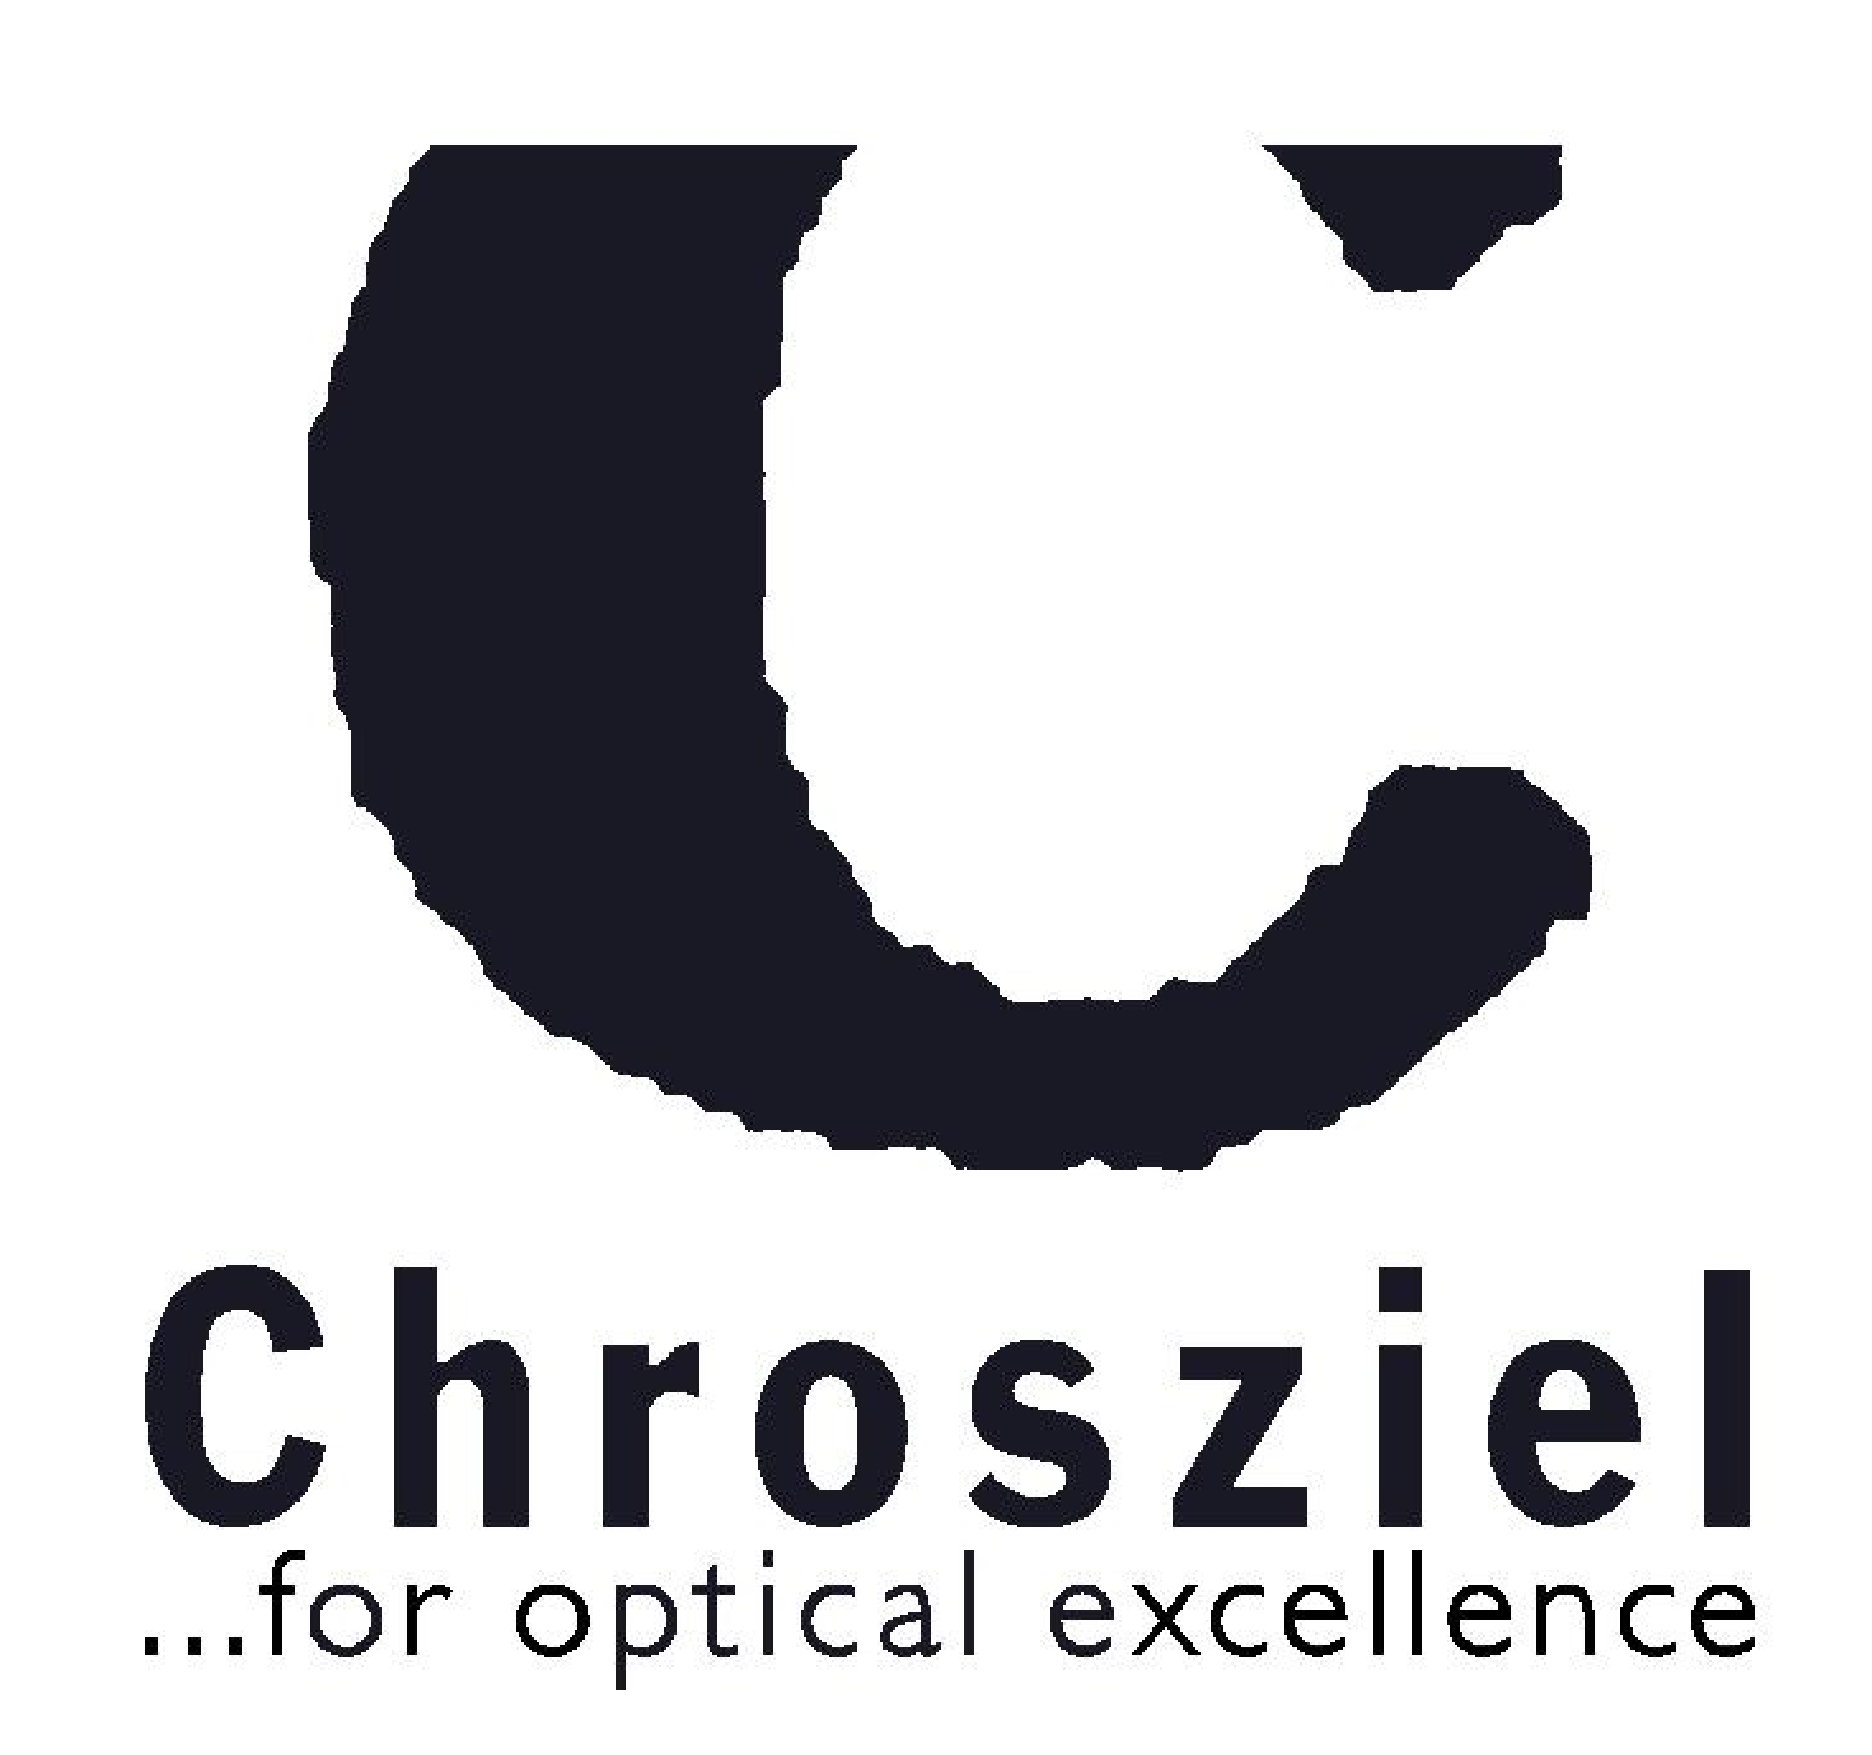 E2992011 Weitergabe sowie Vervielfältigung der Unterlagen auch auszugsweise nur mit ausdrücklicher Genehmigung der Chrosziel GmbH.